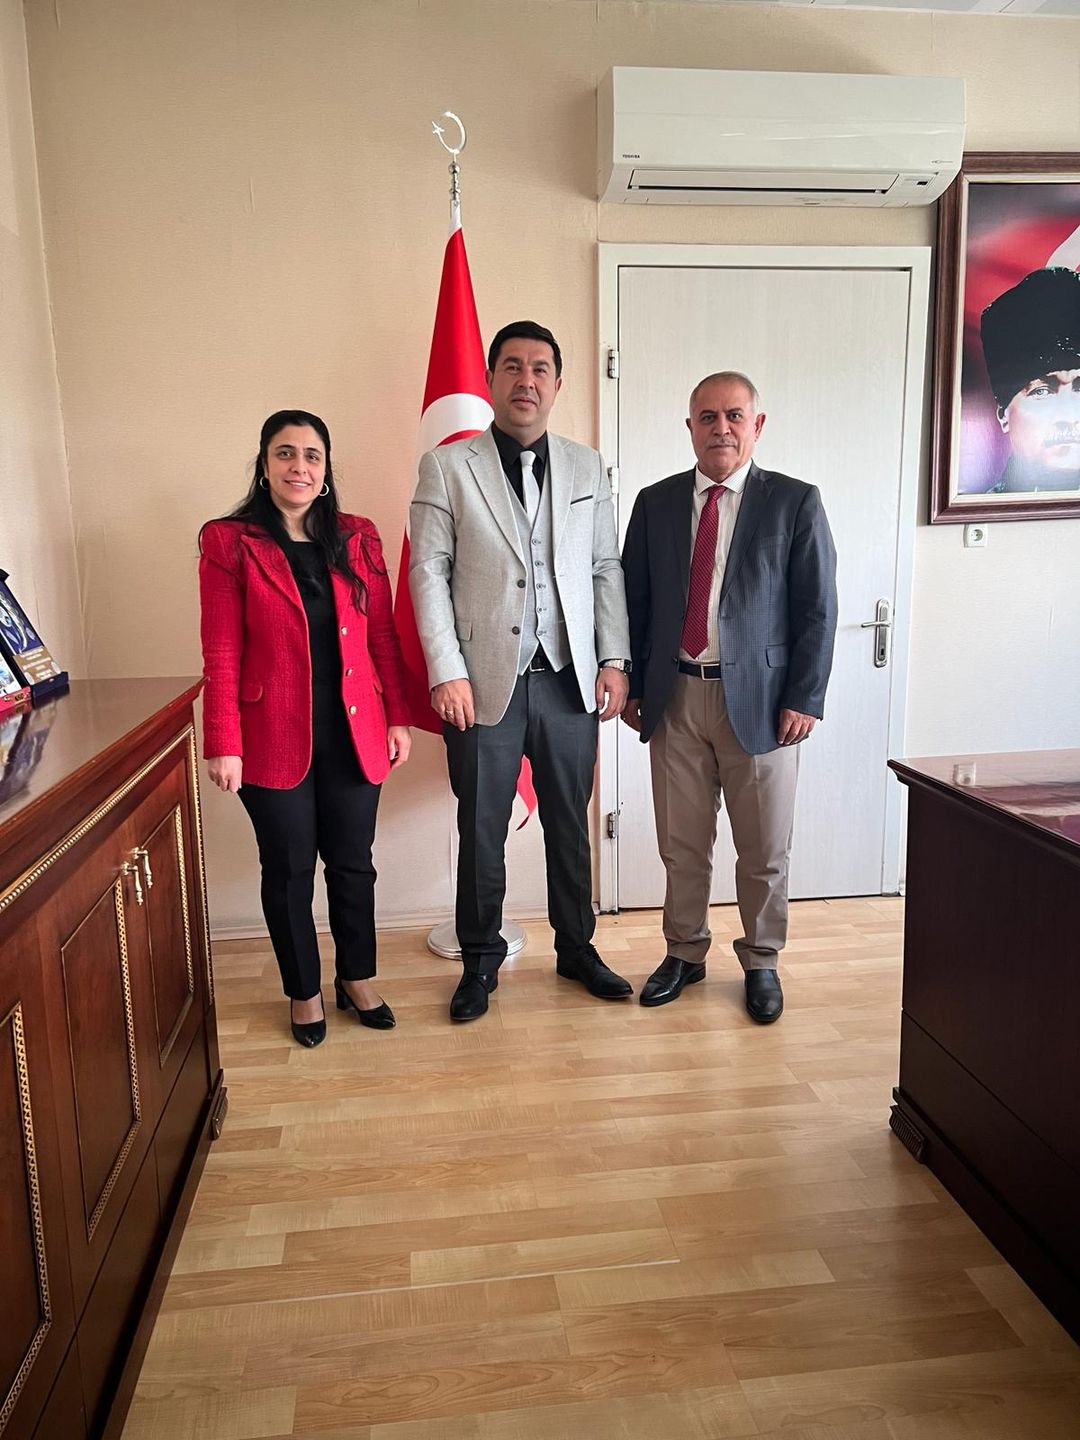 Kars Ticaret ve Sanayi Odası Başkanı Kadir Bozan, Sosyal Güvenlik Kurumu İl Müdürü Abdulkadir Ayluçtarhan'ı ziyaret etti